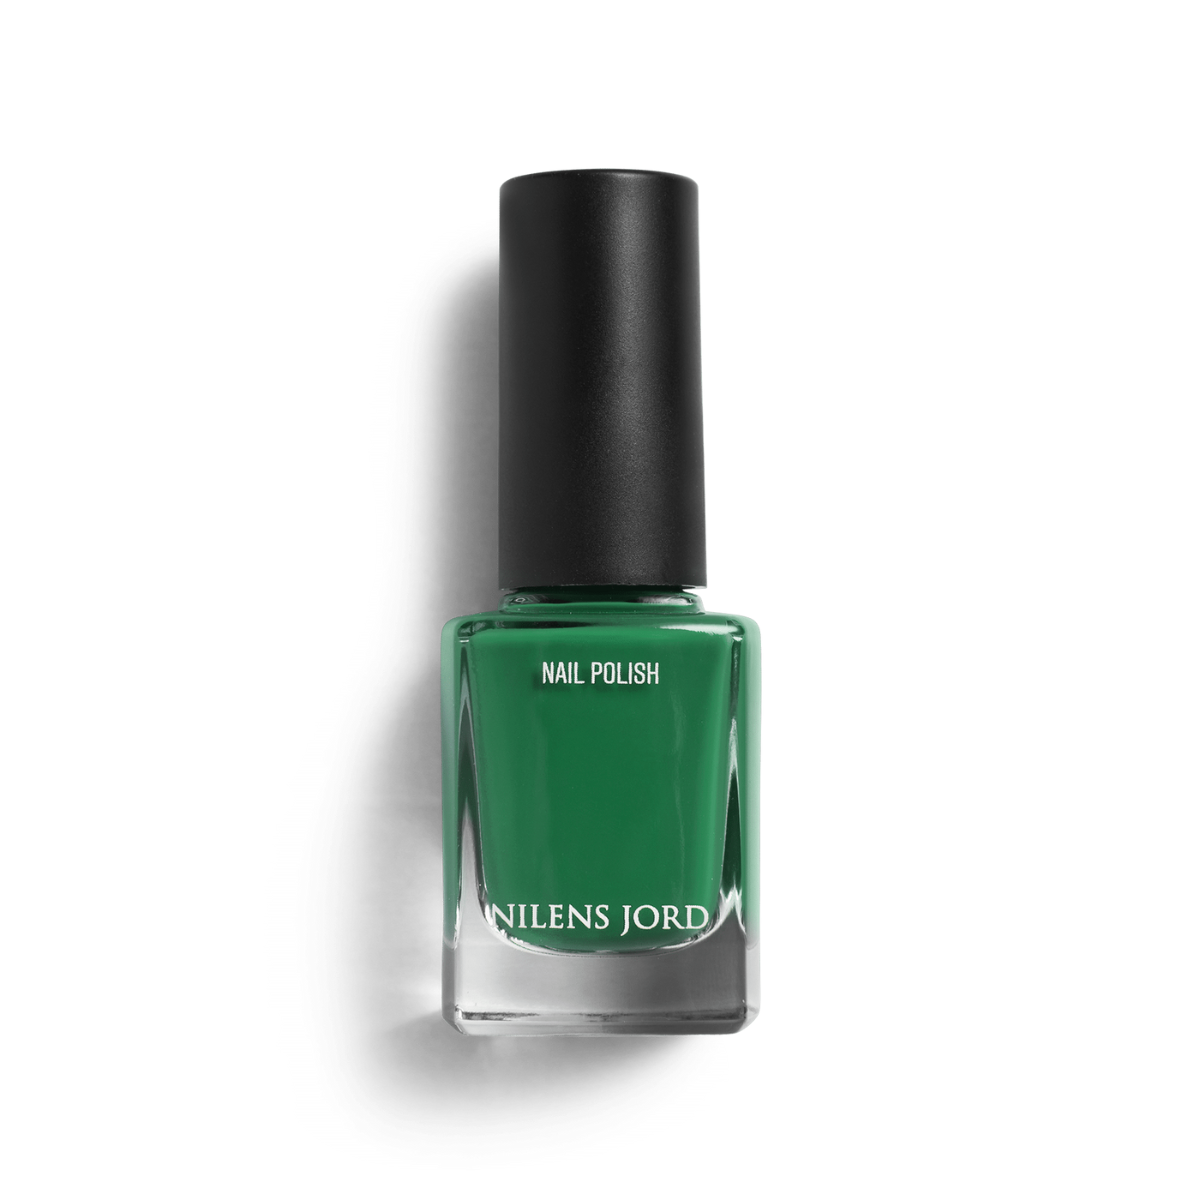 Nilens Jord - Nail Polish – Emerald Green